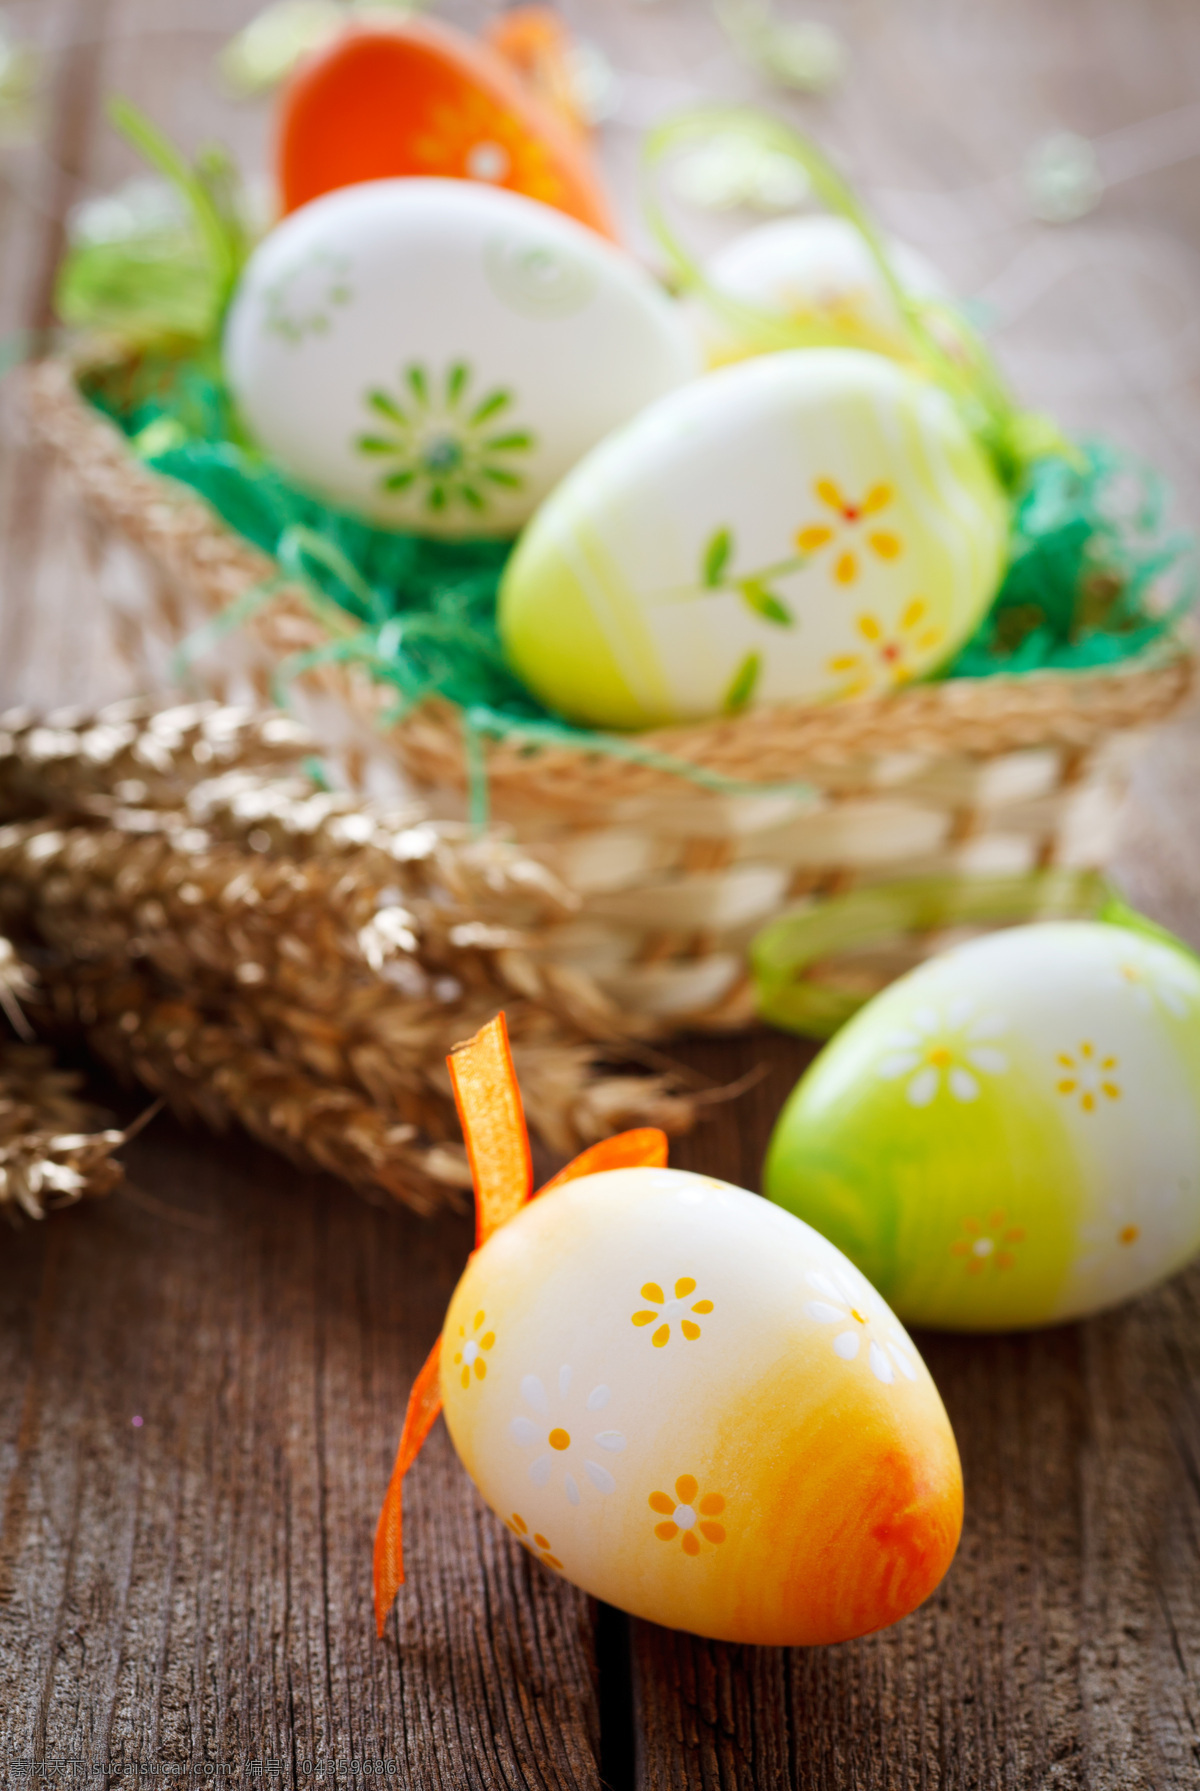 复活节 彩蛋 复活节彩蛋 鸡蛋 节日素材 篮子 节日庆典 生活百科